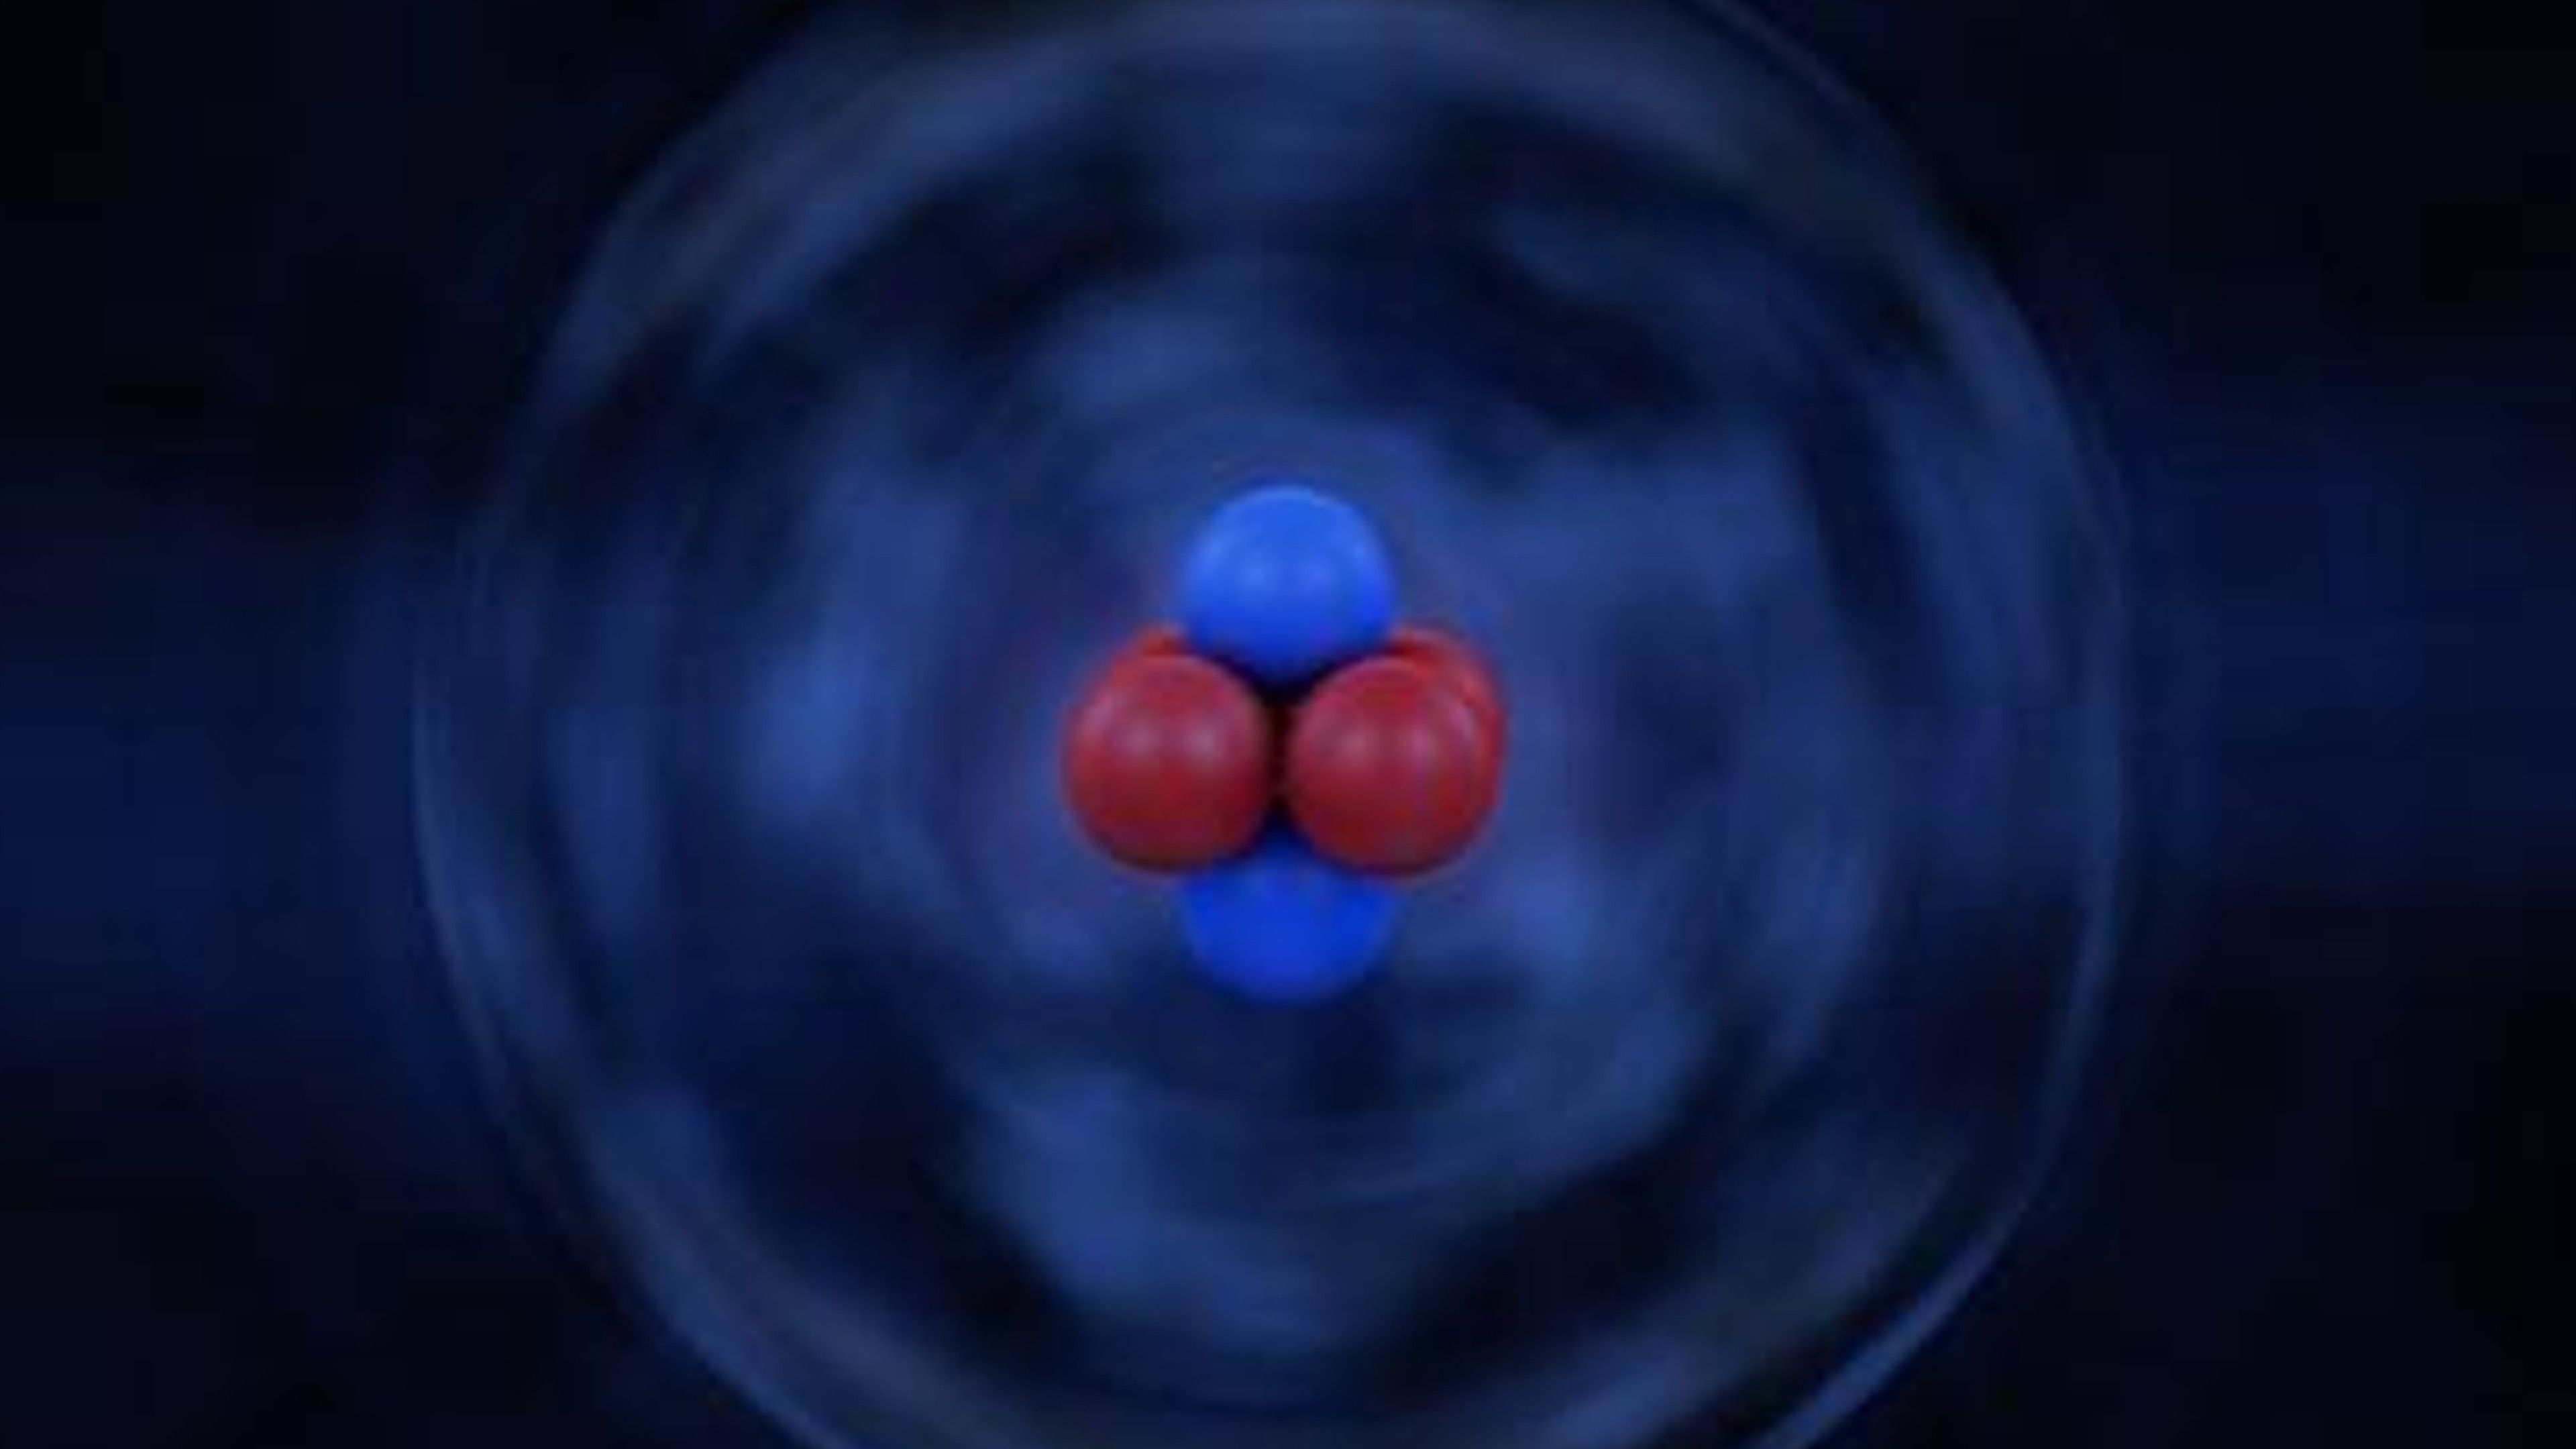 How Do You Visualize An Atom?